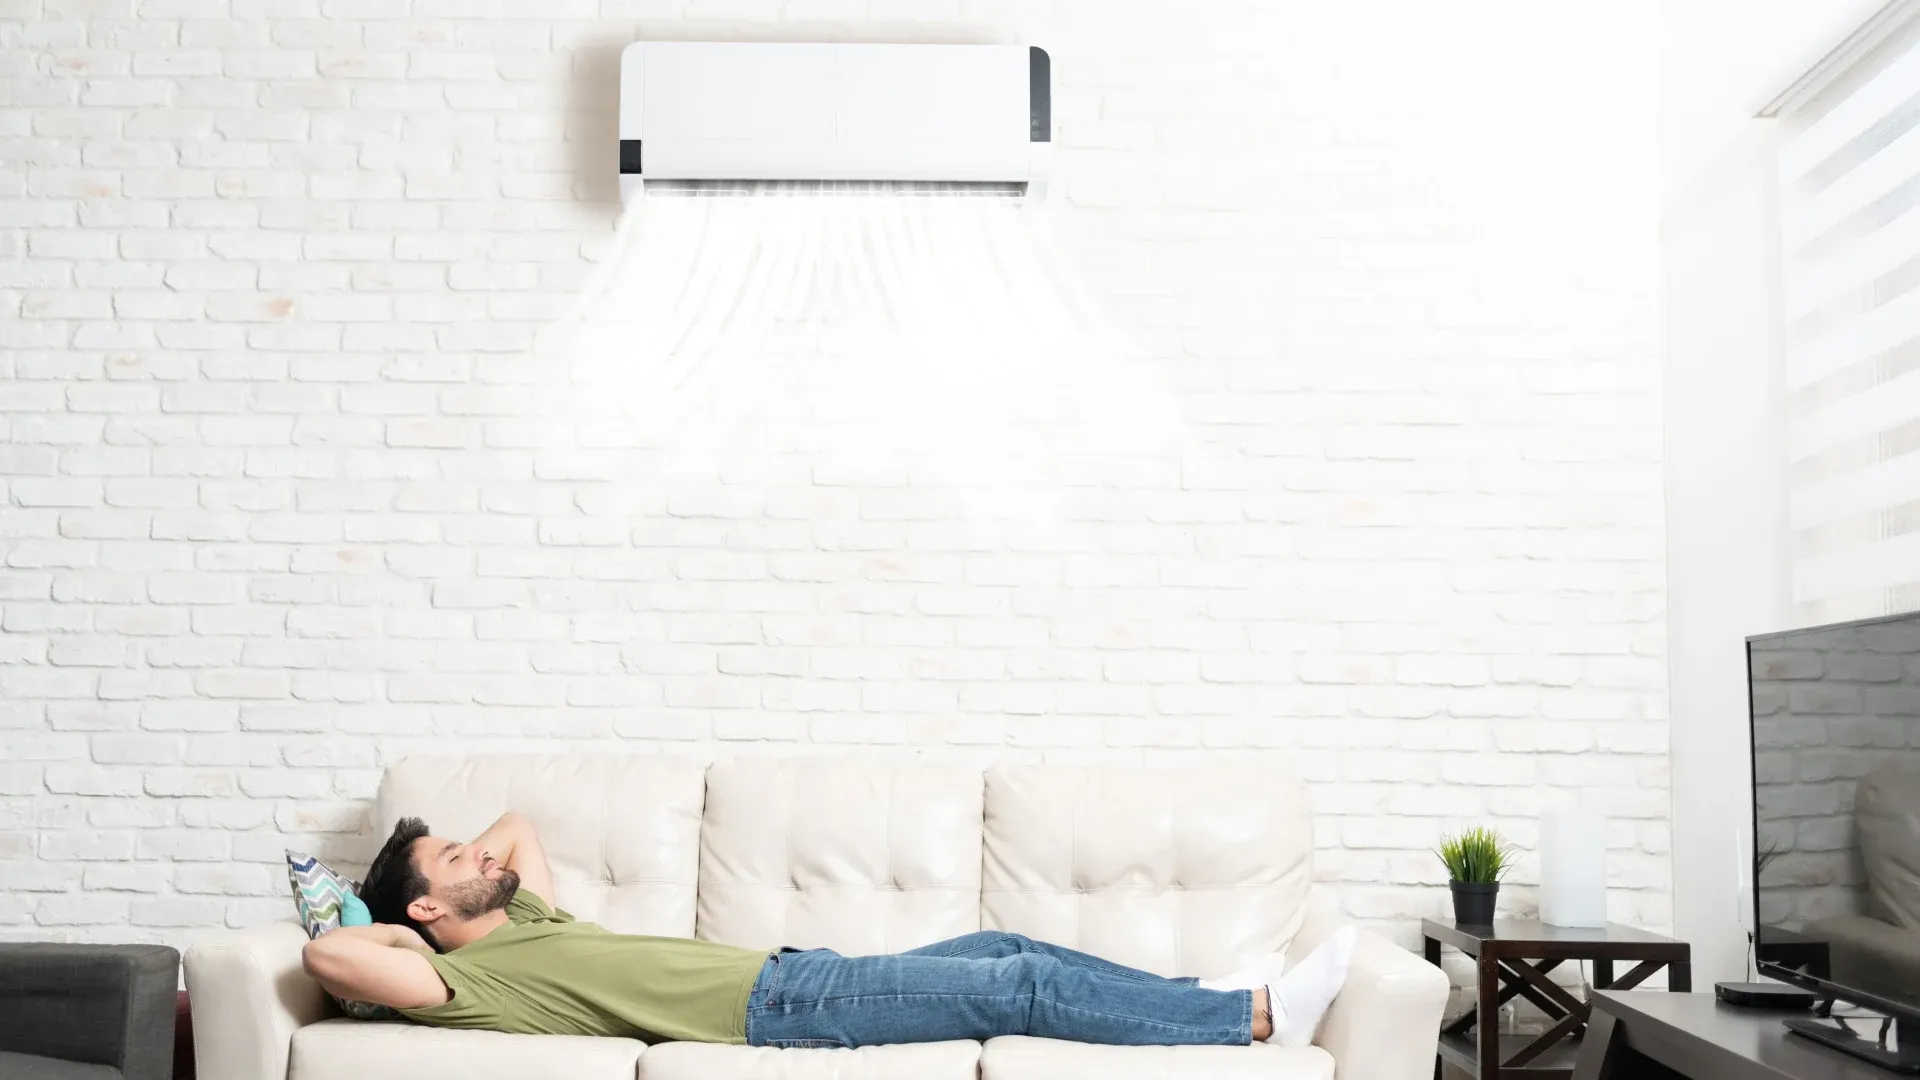 Ar-condicionado split instalado na parede e homem dormindo no sofá